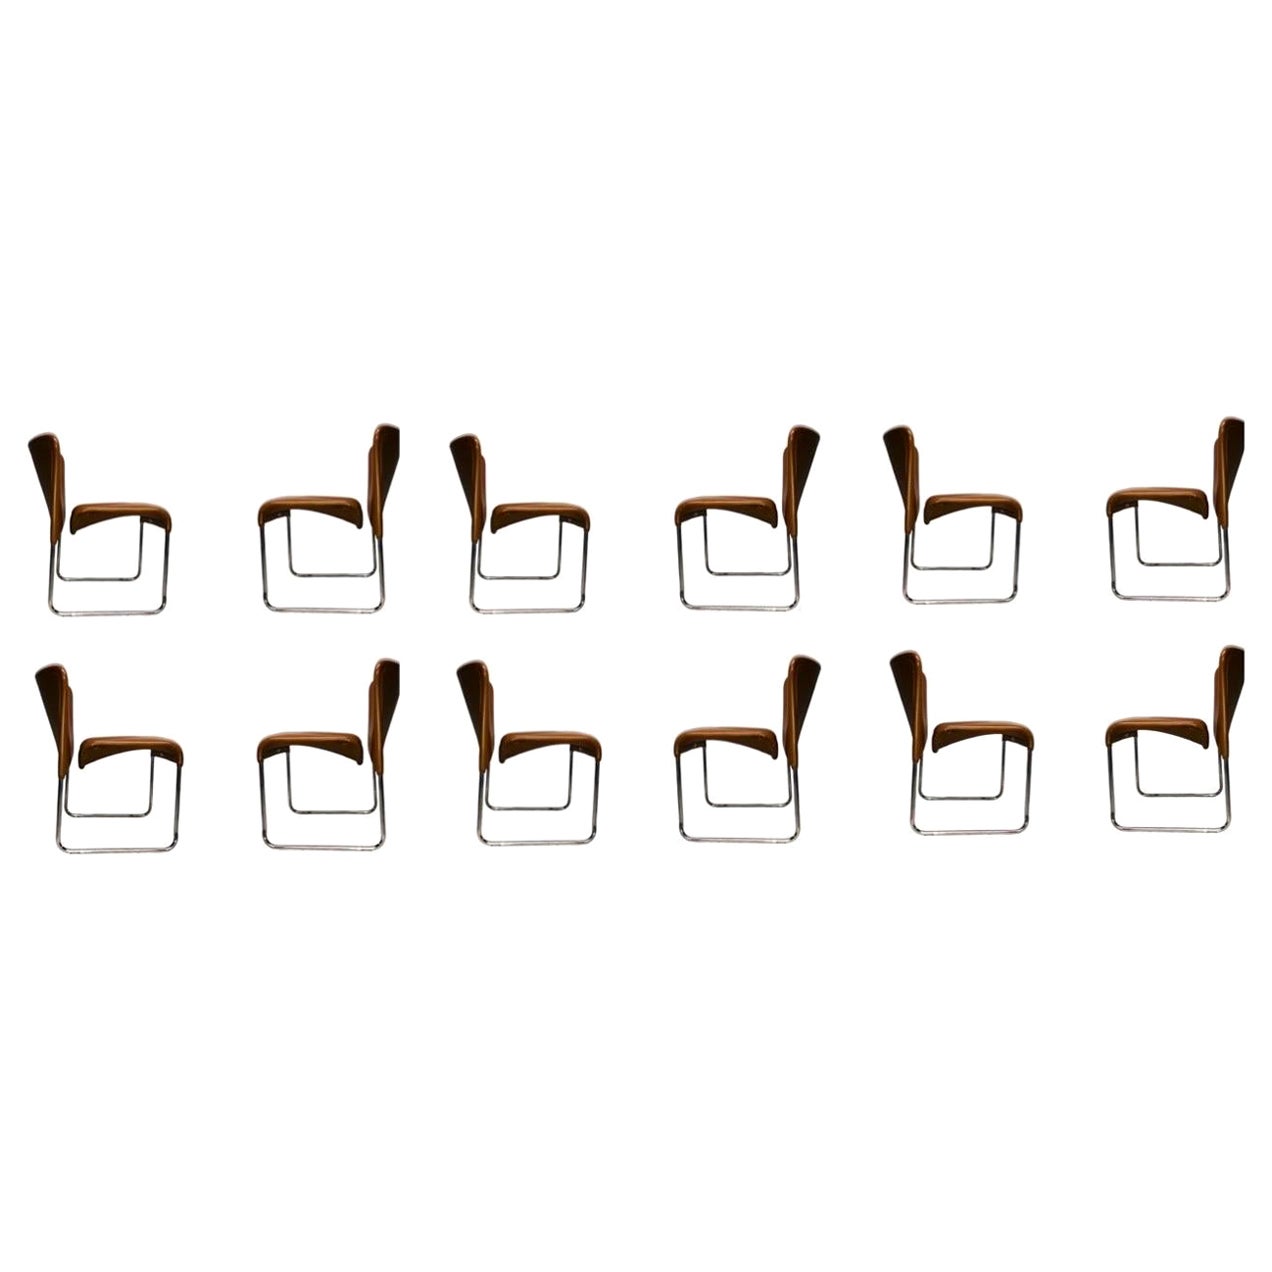 Dies ist ein Satz von 6 ungewöhnlichen Bauhaus Cantilever Dining Chairs, entworfen von Marcello Cuneo für Mobel Italia in den frühen 1970er Jahren. Diese wurden über Stendig aus Italien importiert und ursprünglich über den Showroom in NYC verkauft